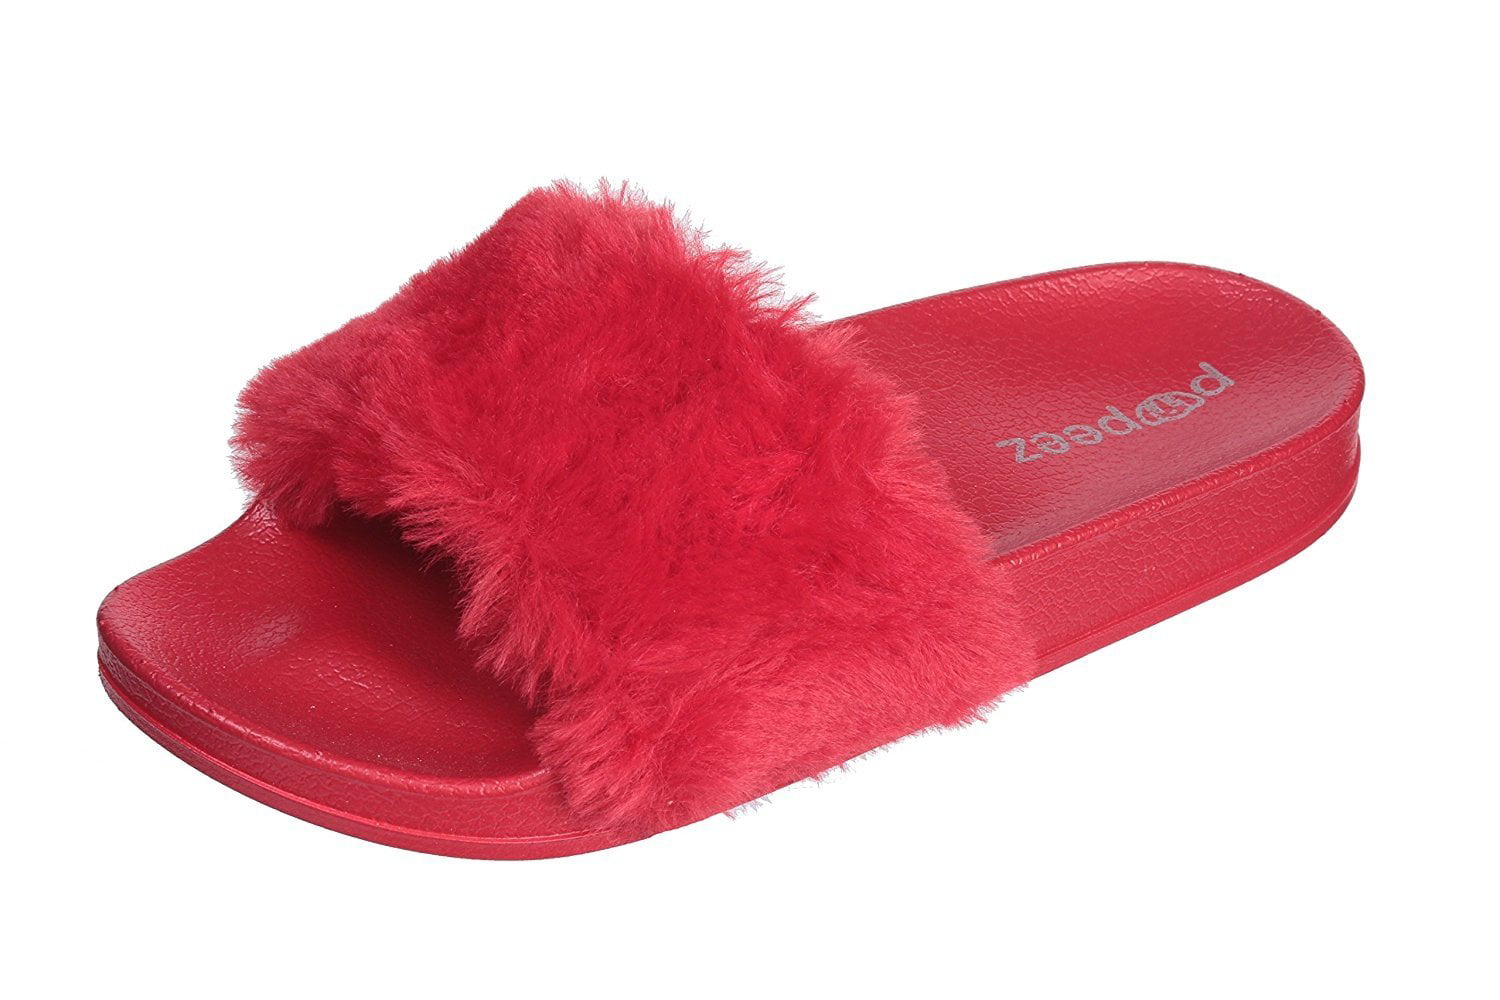 4Kidz Girls Faux Fur Mule Slippers Open Toe Childrens Kids Gift Idea Size UK 10-2